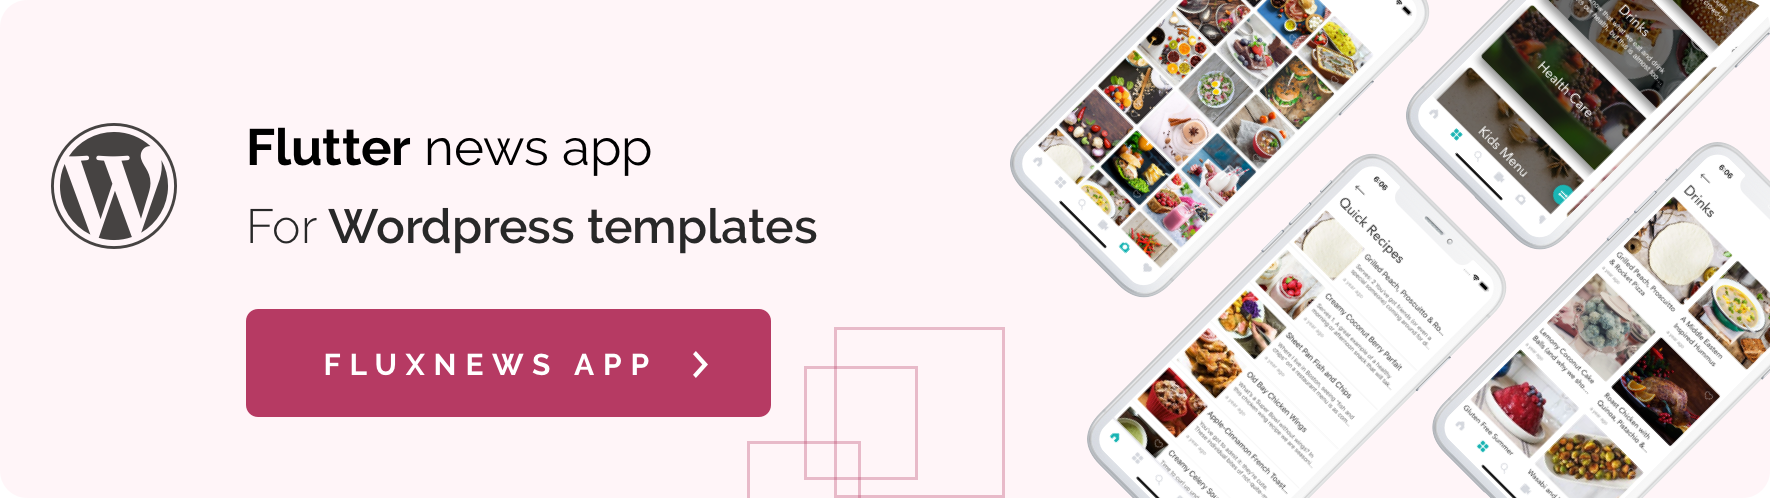 Fluxstore Pro - Flutter E-commerce Full App for Magento, Opencart, and Woocommerce - 35